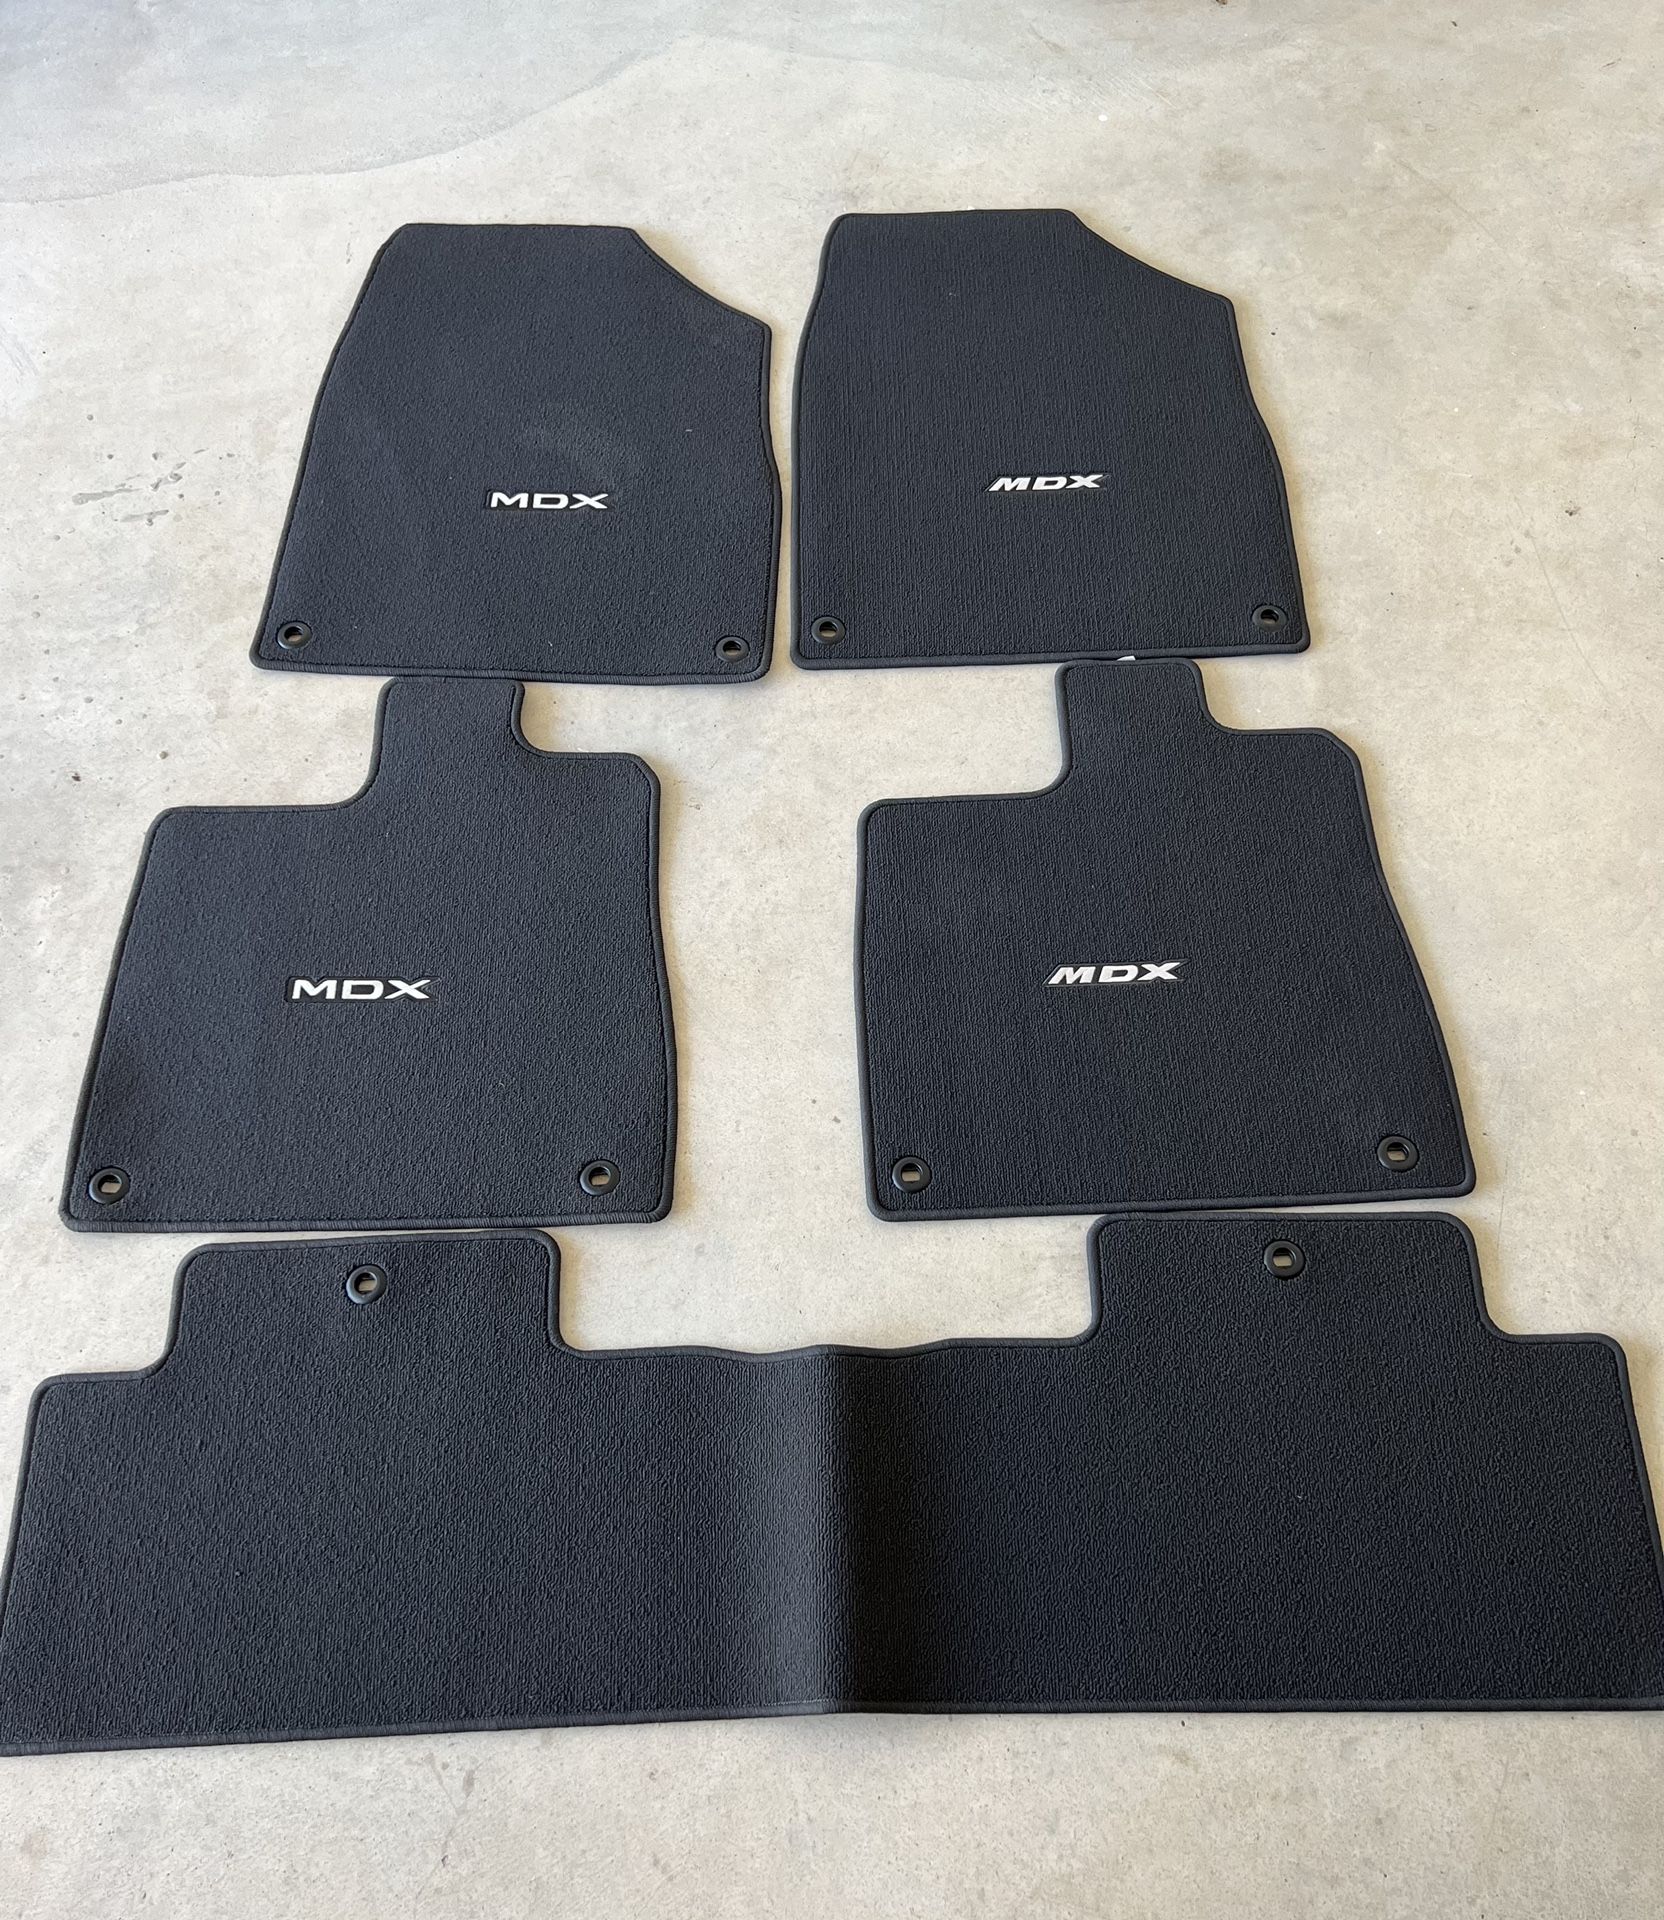 Acura MDX Floor Mats Brand New